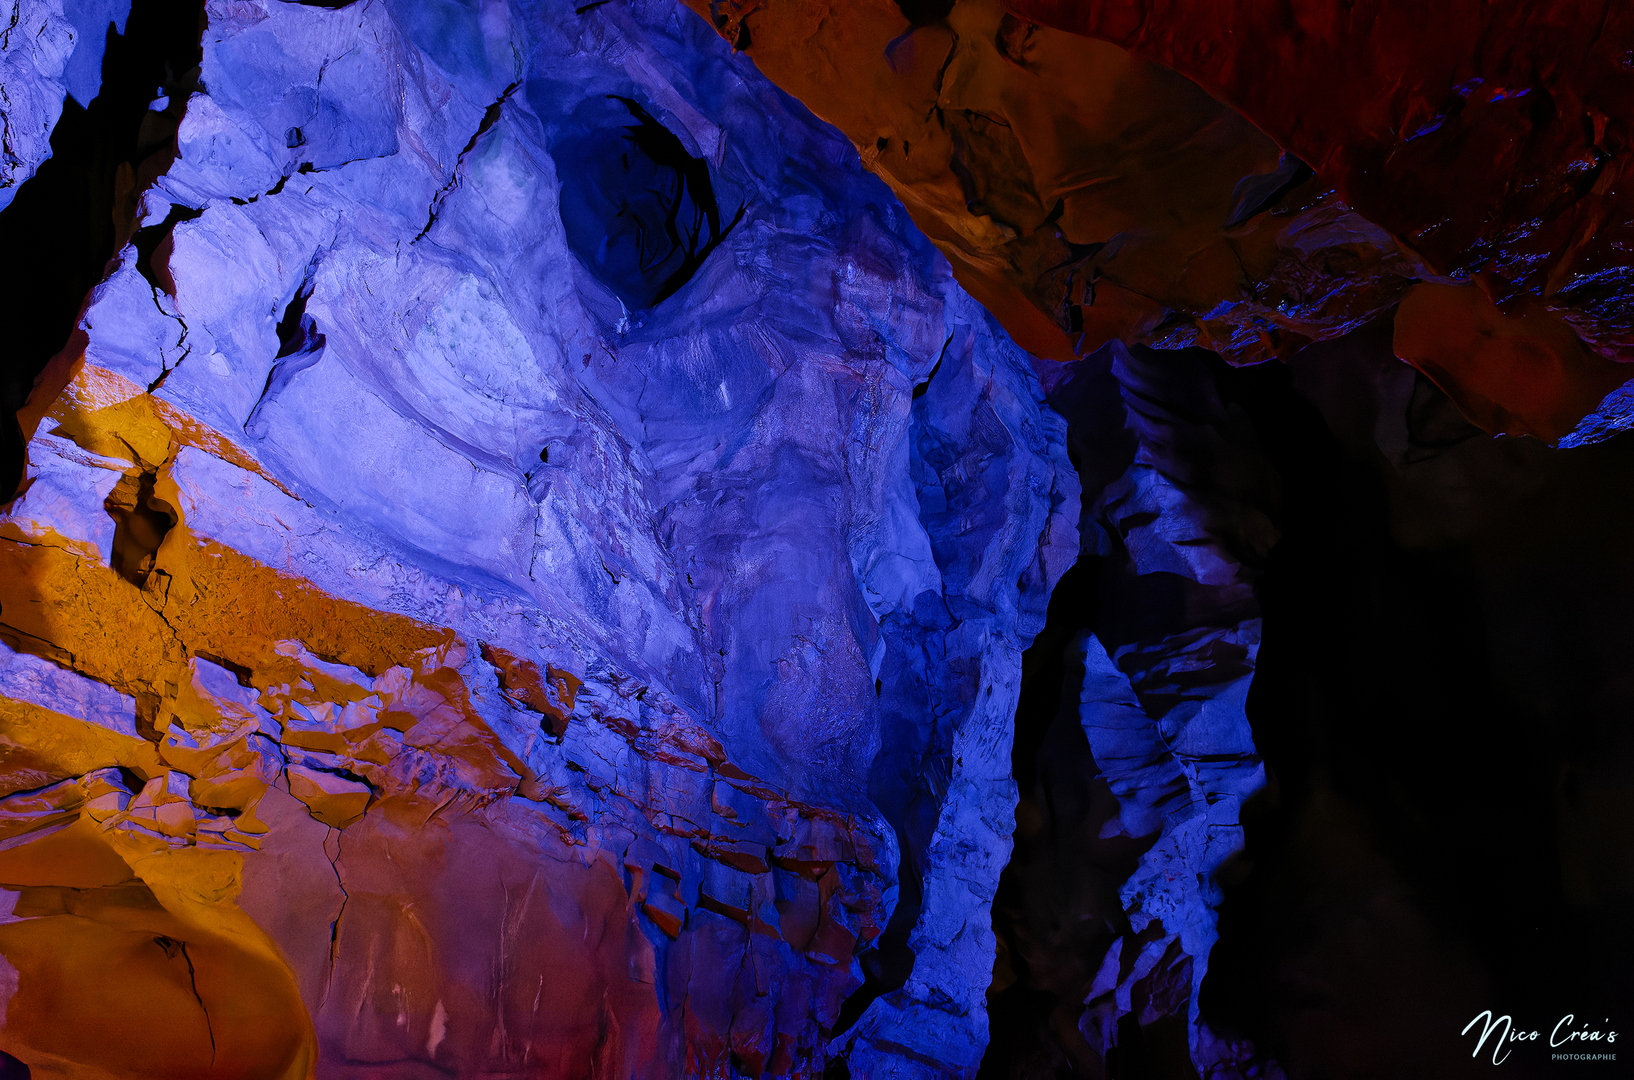 Grotte de Baume-les-Messieurs - _DSC2450_DxO copie.jpg